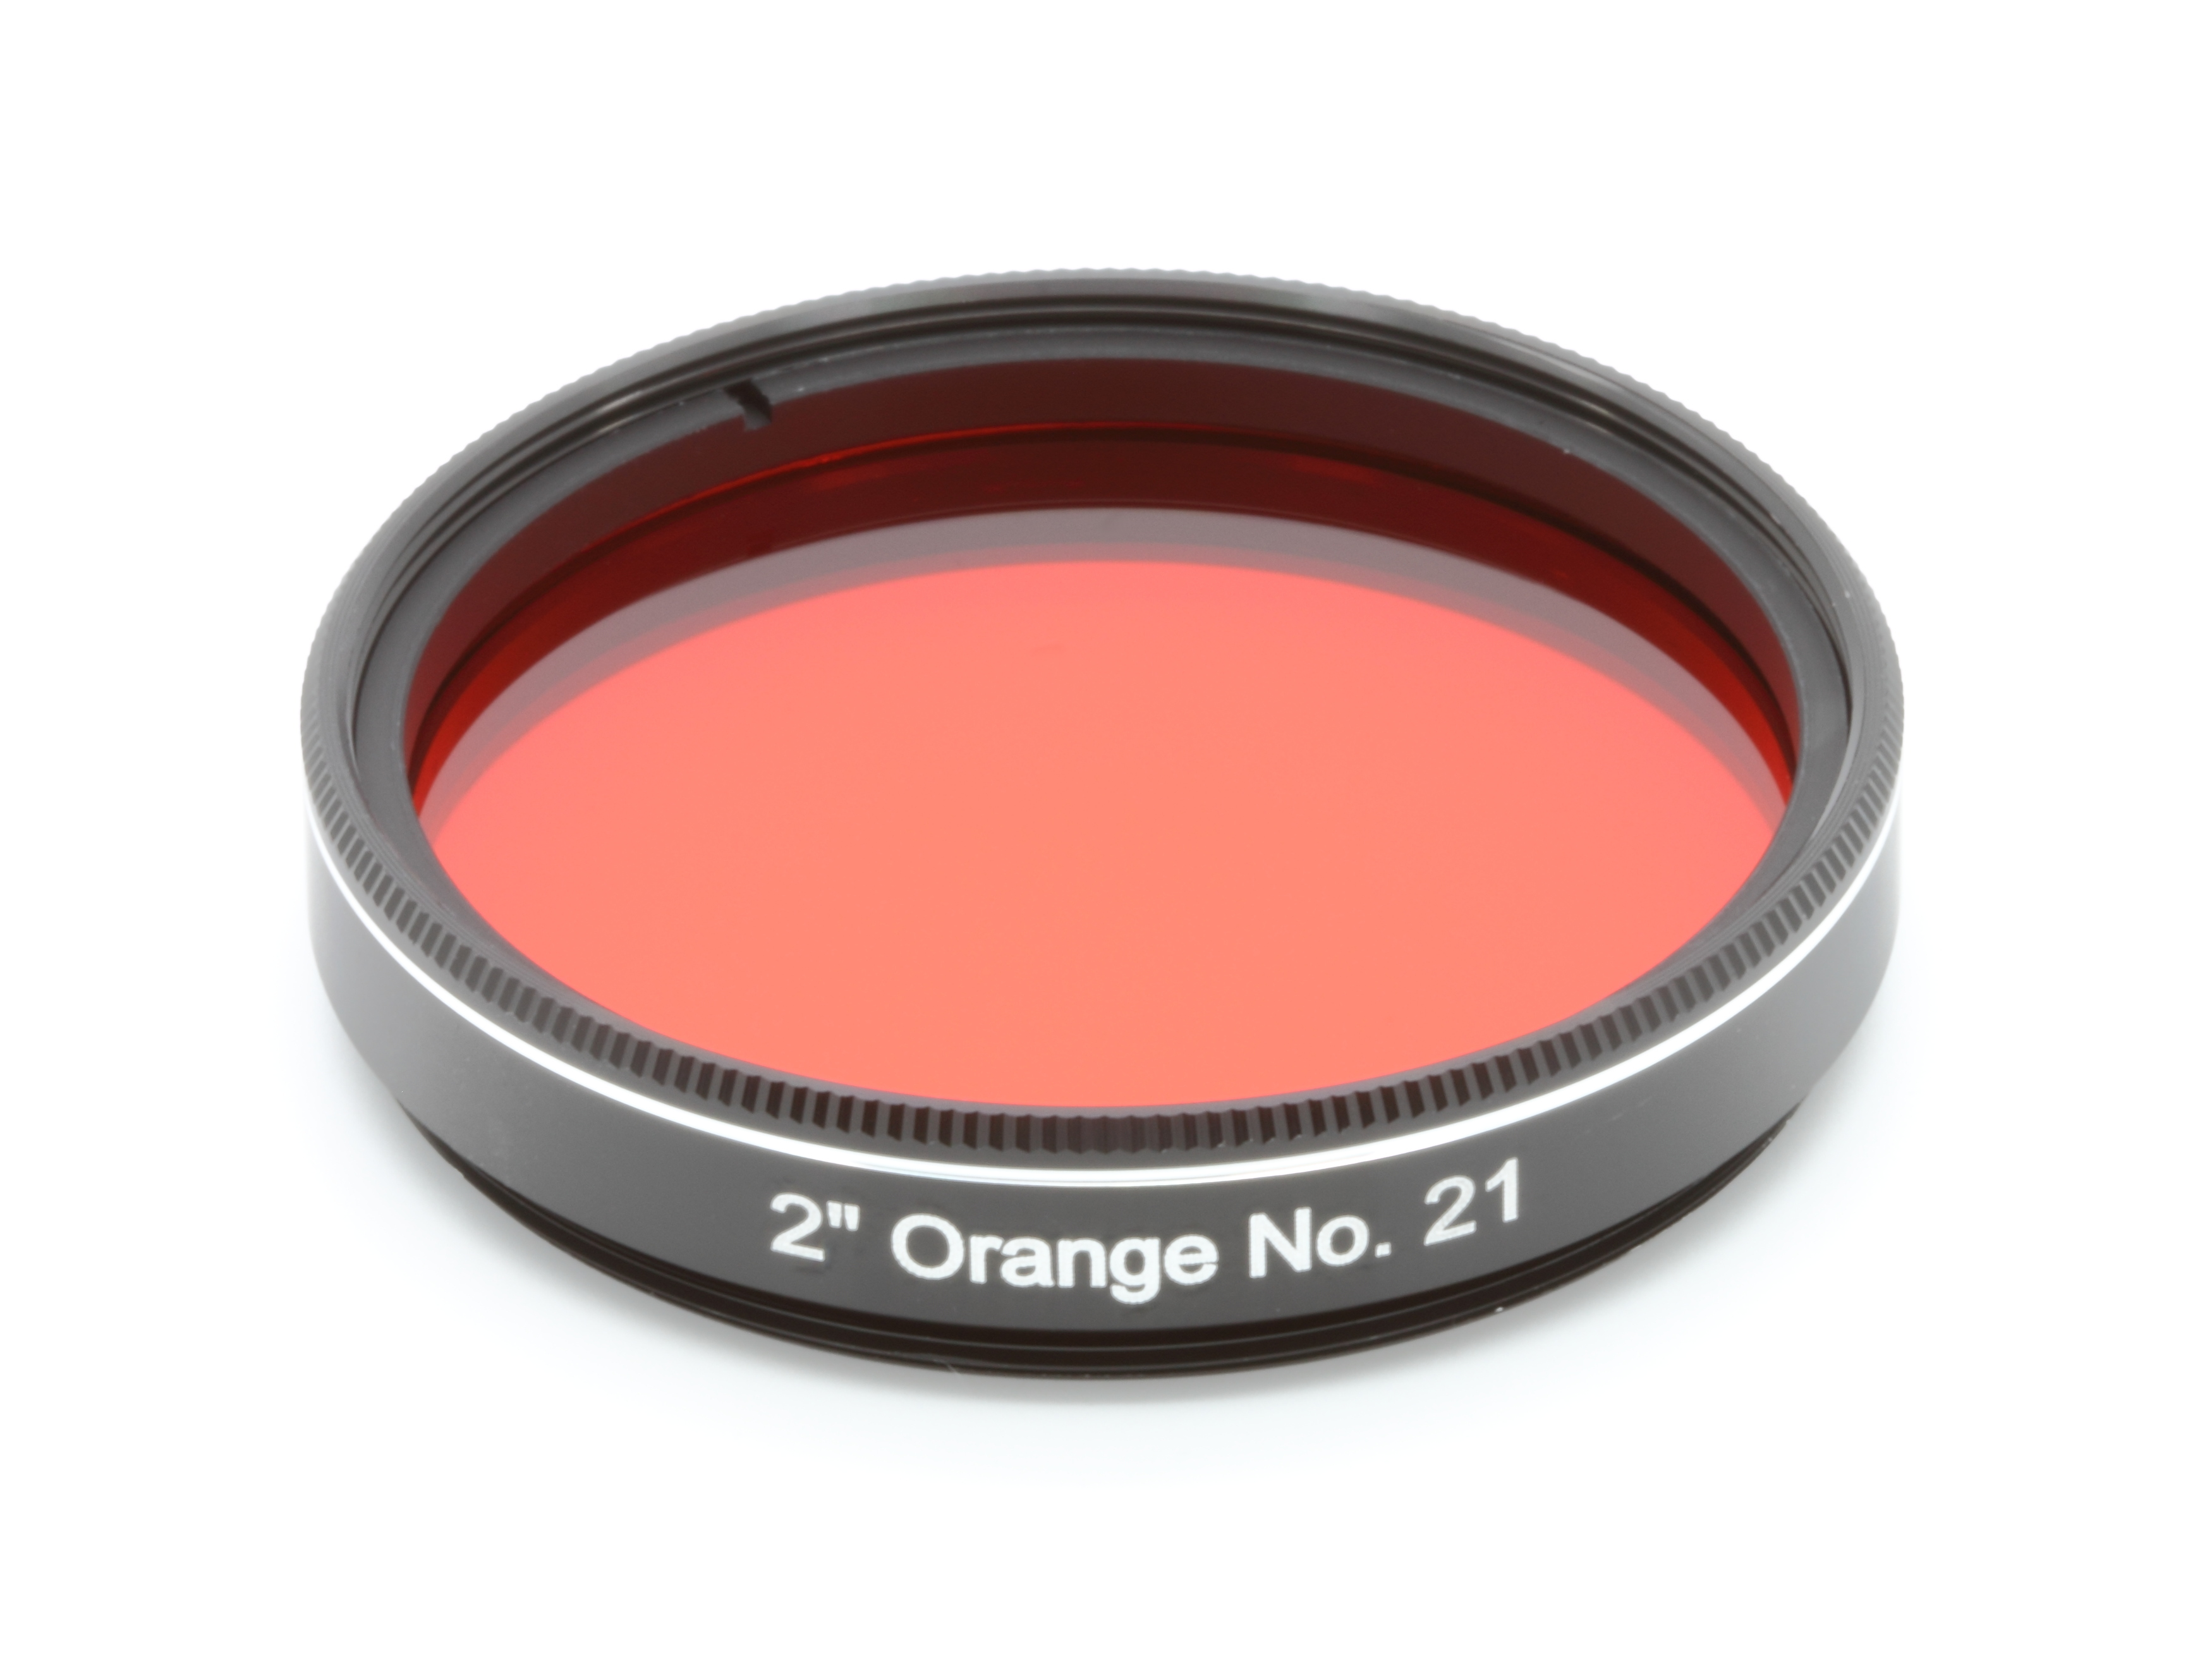 EXPLORE SCIENTIFIC Filter 2" Orange Nr.21